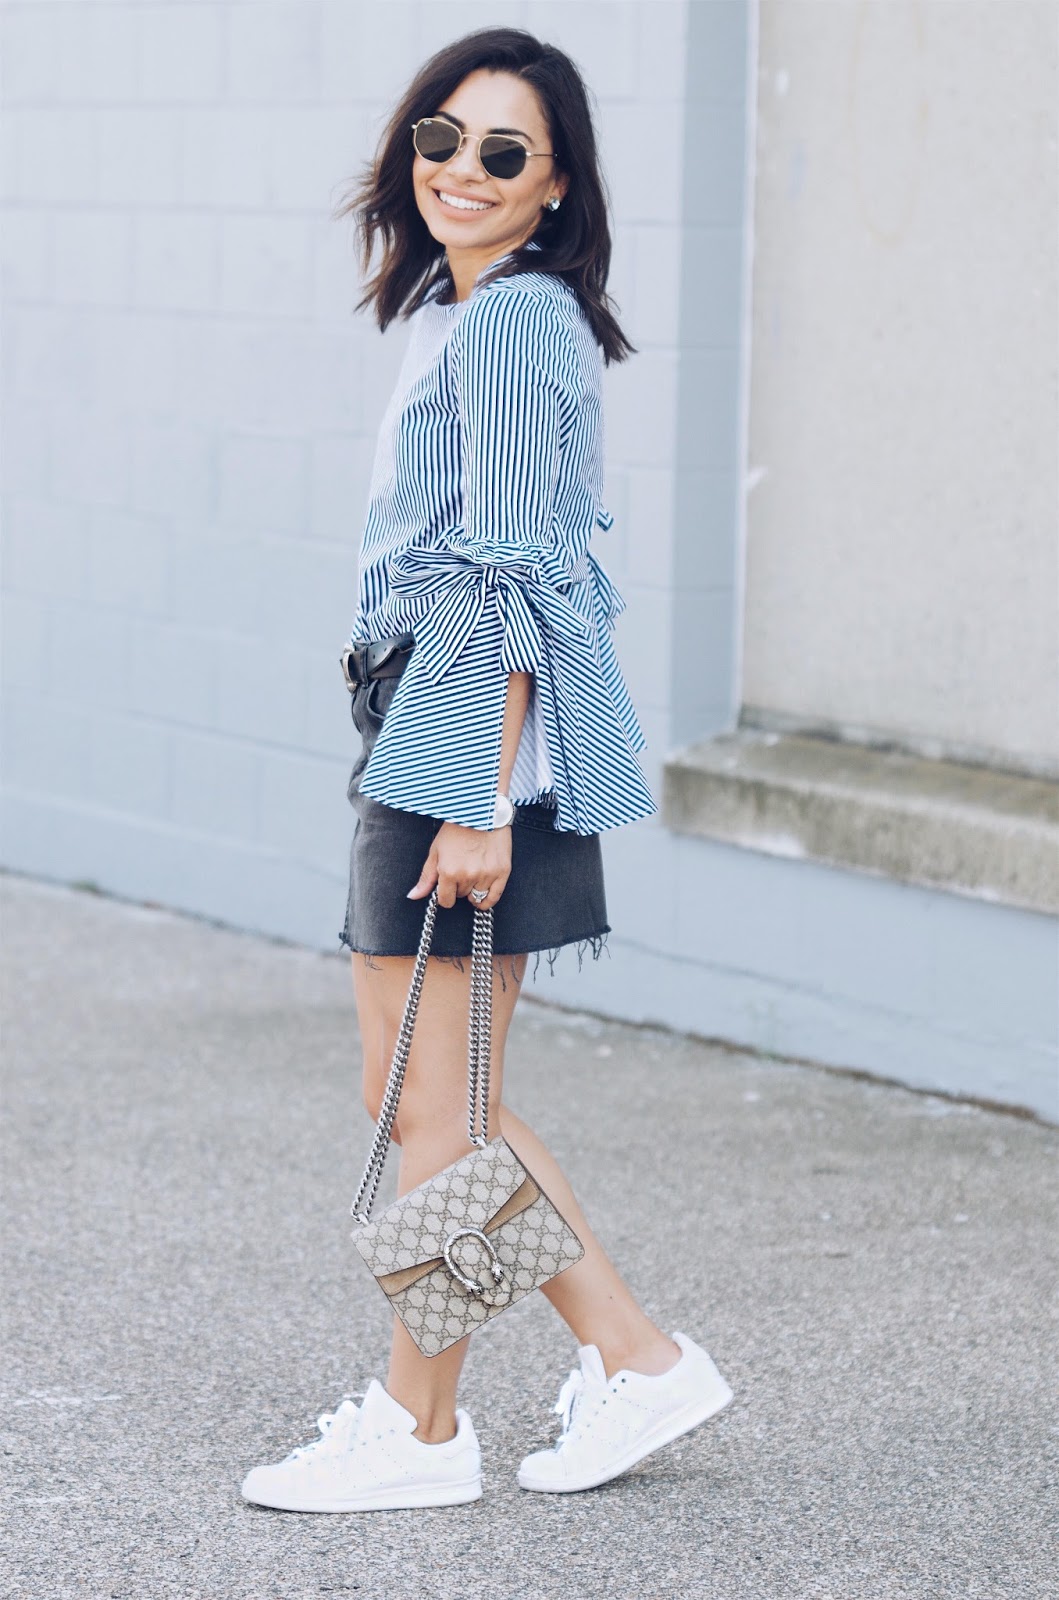 Denim Skirt for Fall | The Style Brunch